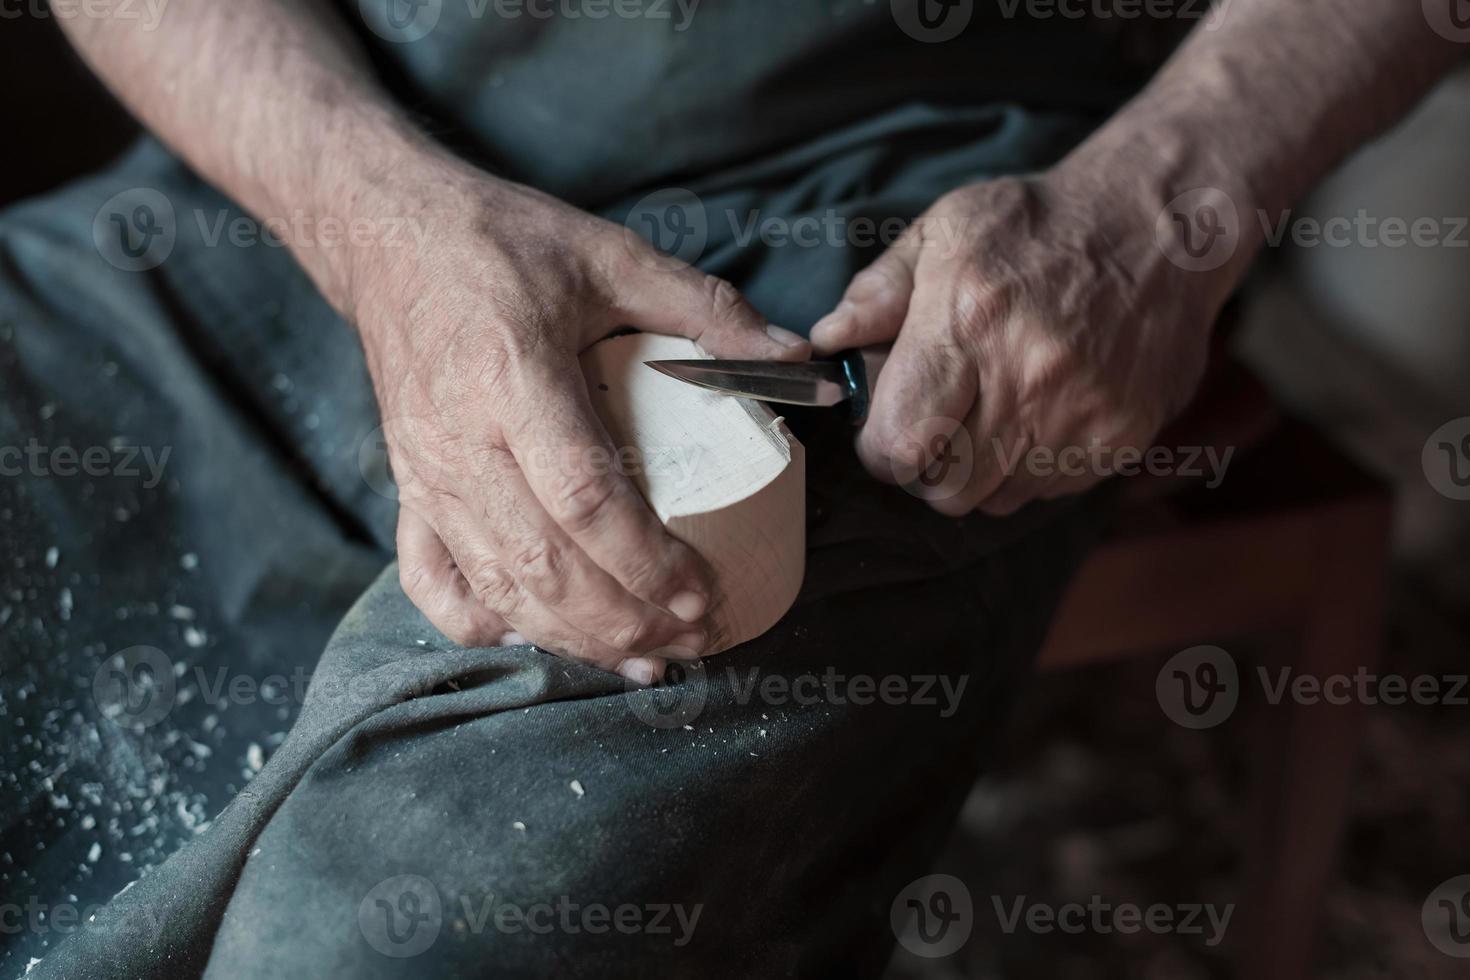 mani intaglio tazza a partire dal Di legno, Lavorando con scalpello vicino su. di legno officina. processi di fabbricazione di legno utensili da cucina foto